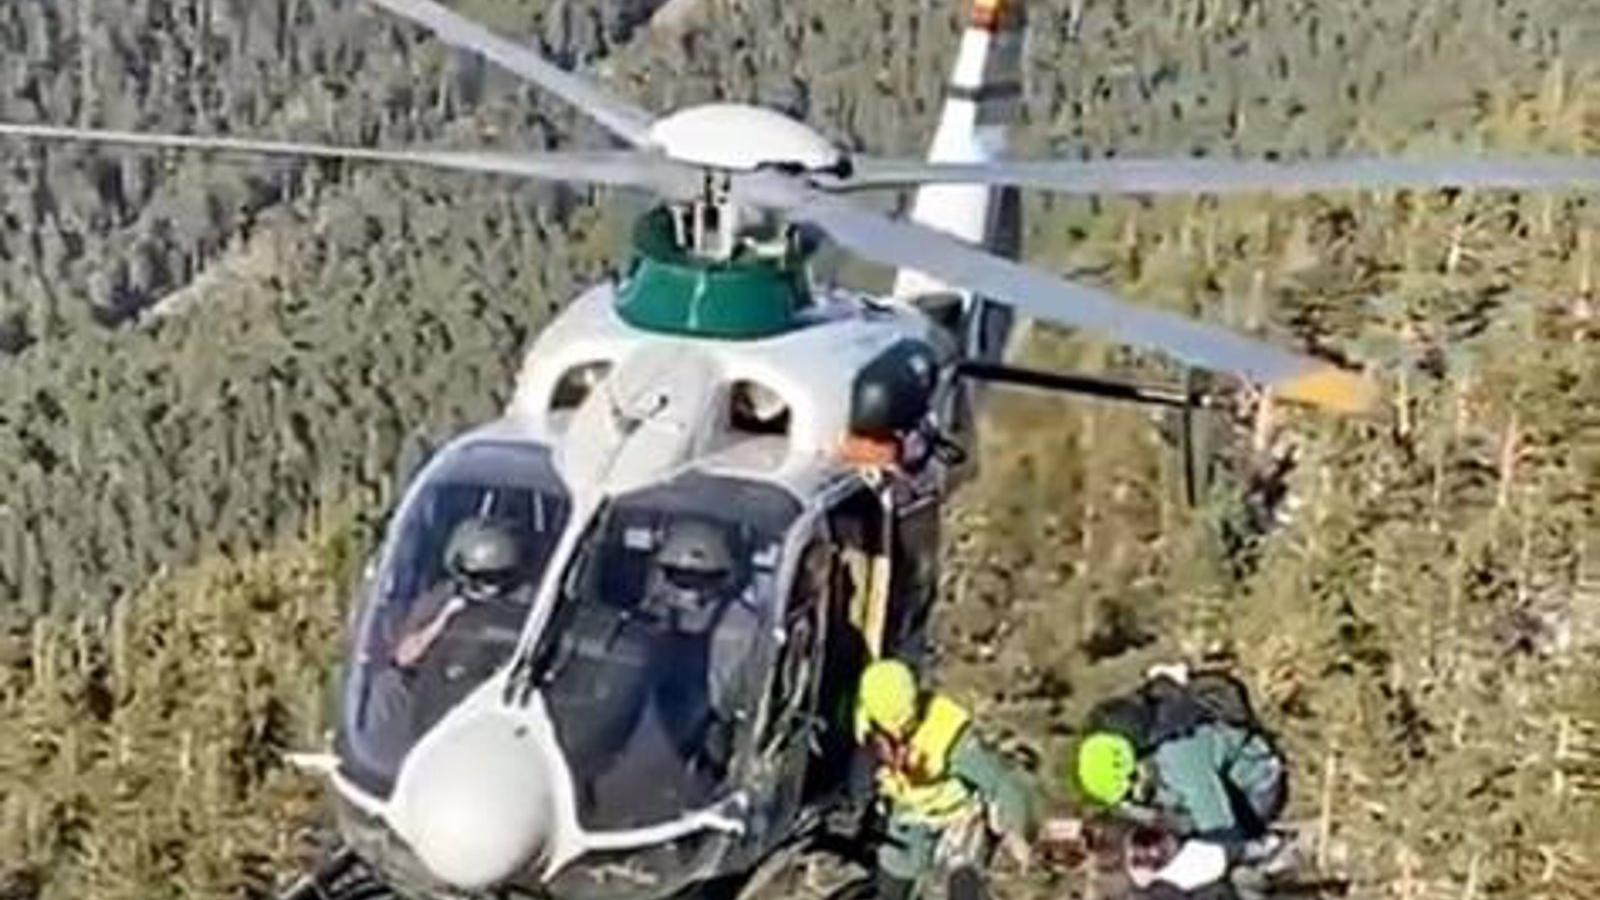 Rescatados en helicóptero tres senderistas heridos en la zona de Siete Picos-Cuerda Larga